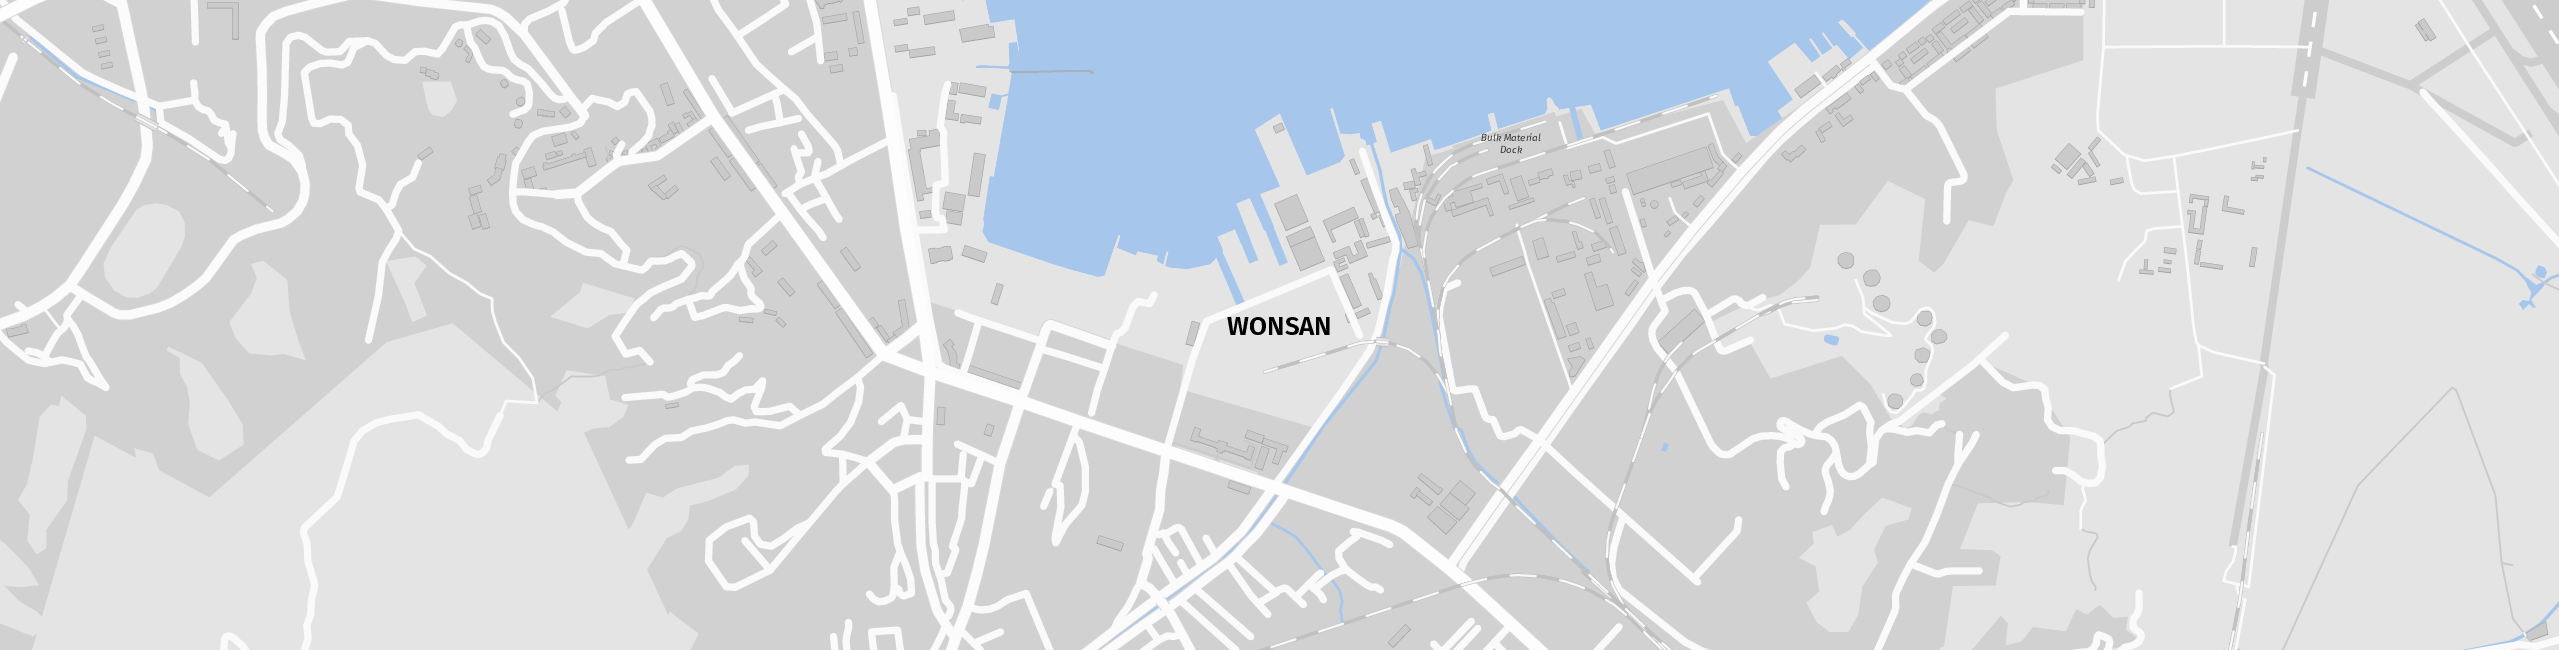 Stadtplan Wŏnsan zum Downloaden.